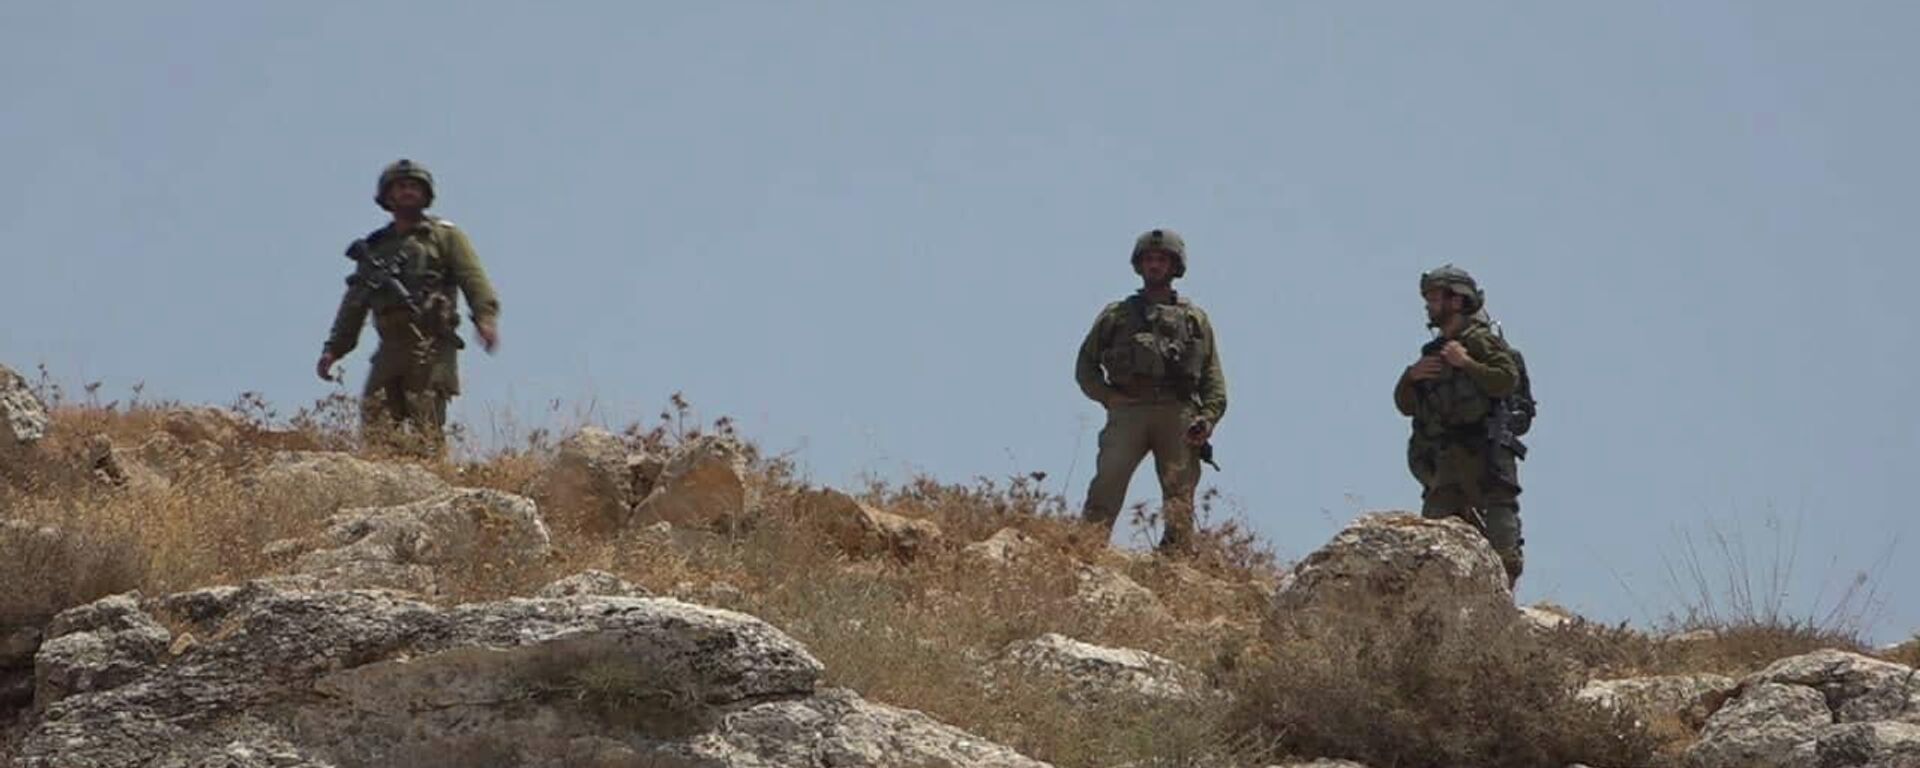 الجيش الإسرائيلي يحبط عملية تهريب مخدرات بعد مطاردة كبيرة على حدود مصر